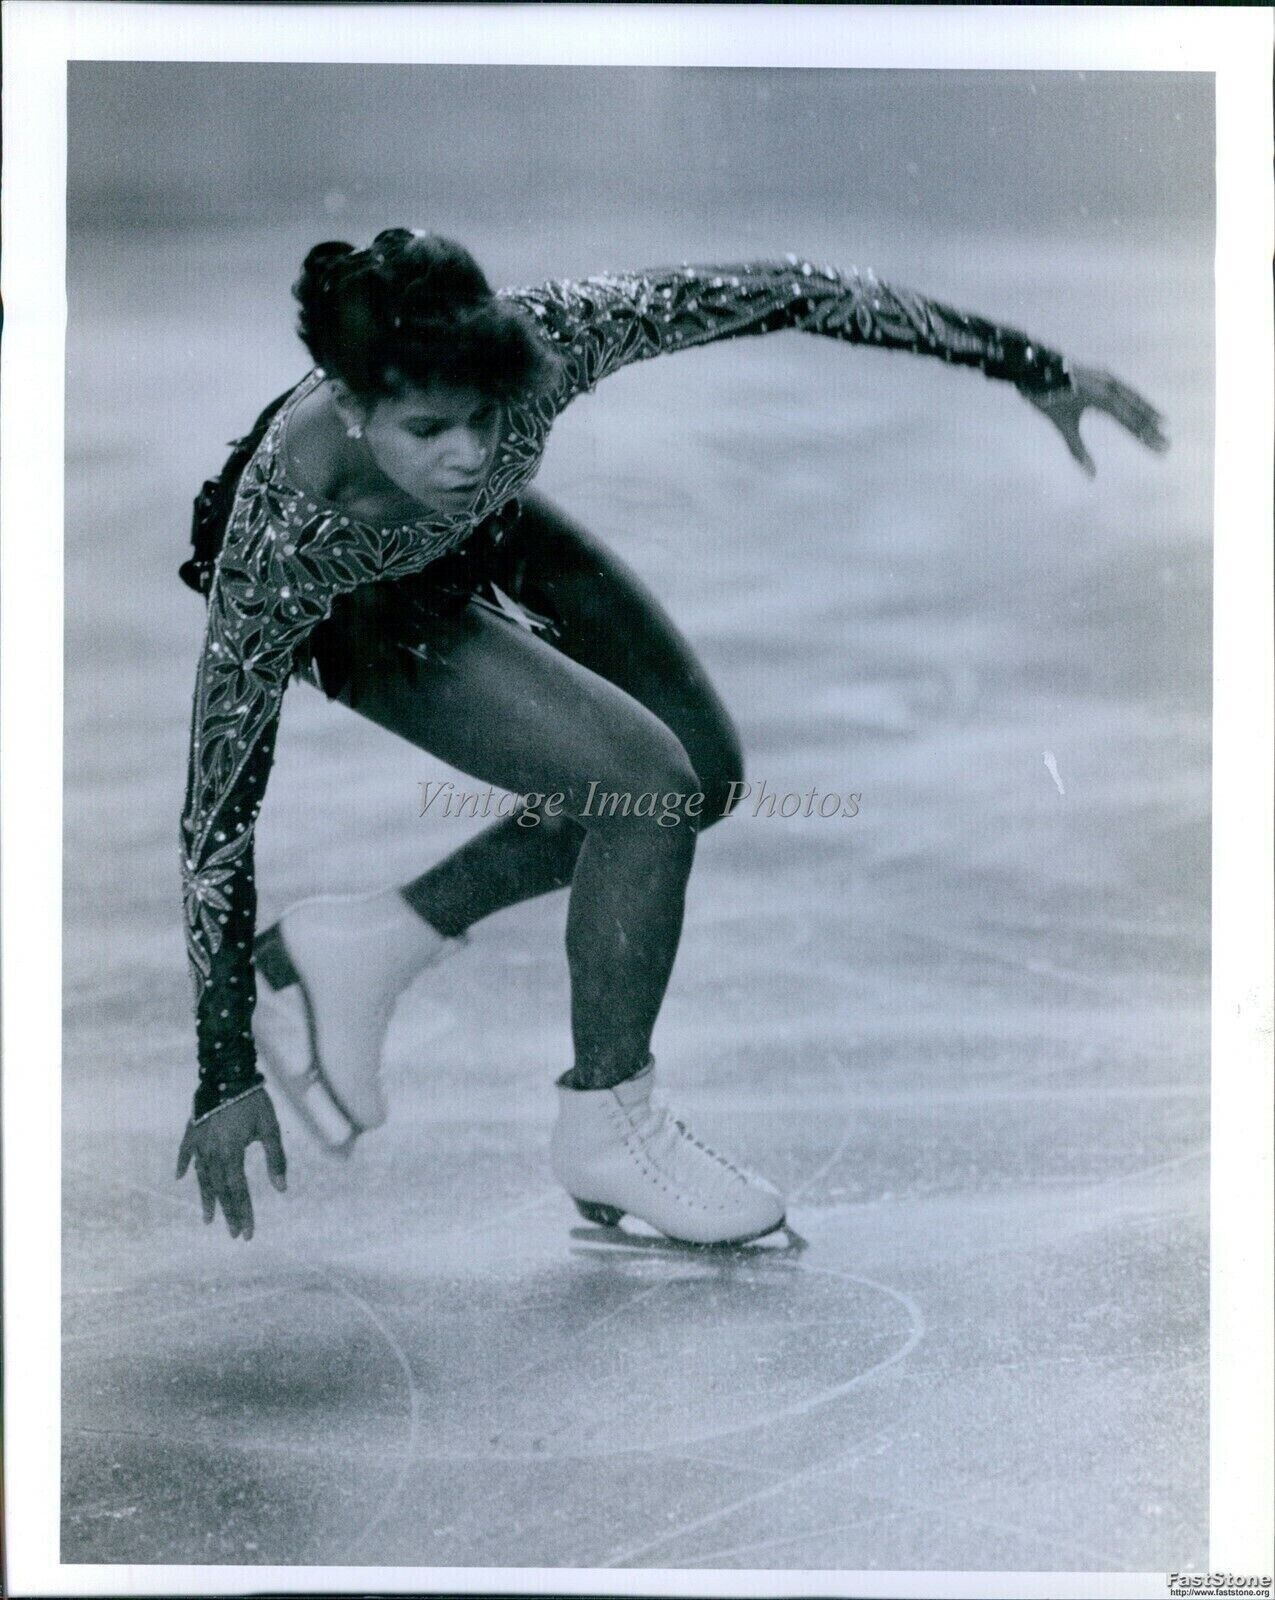 1987 Defending Champion Debi Thomas Stumbles During Free Skate Sports 8X10 Photo